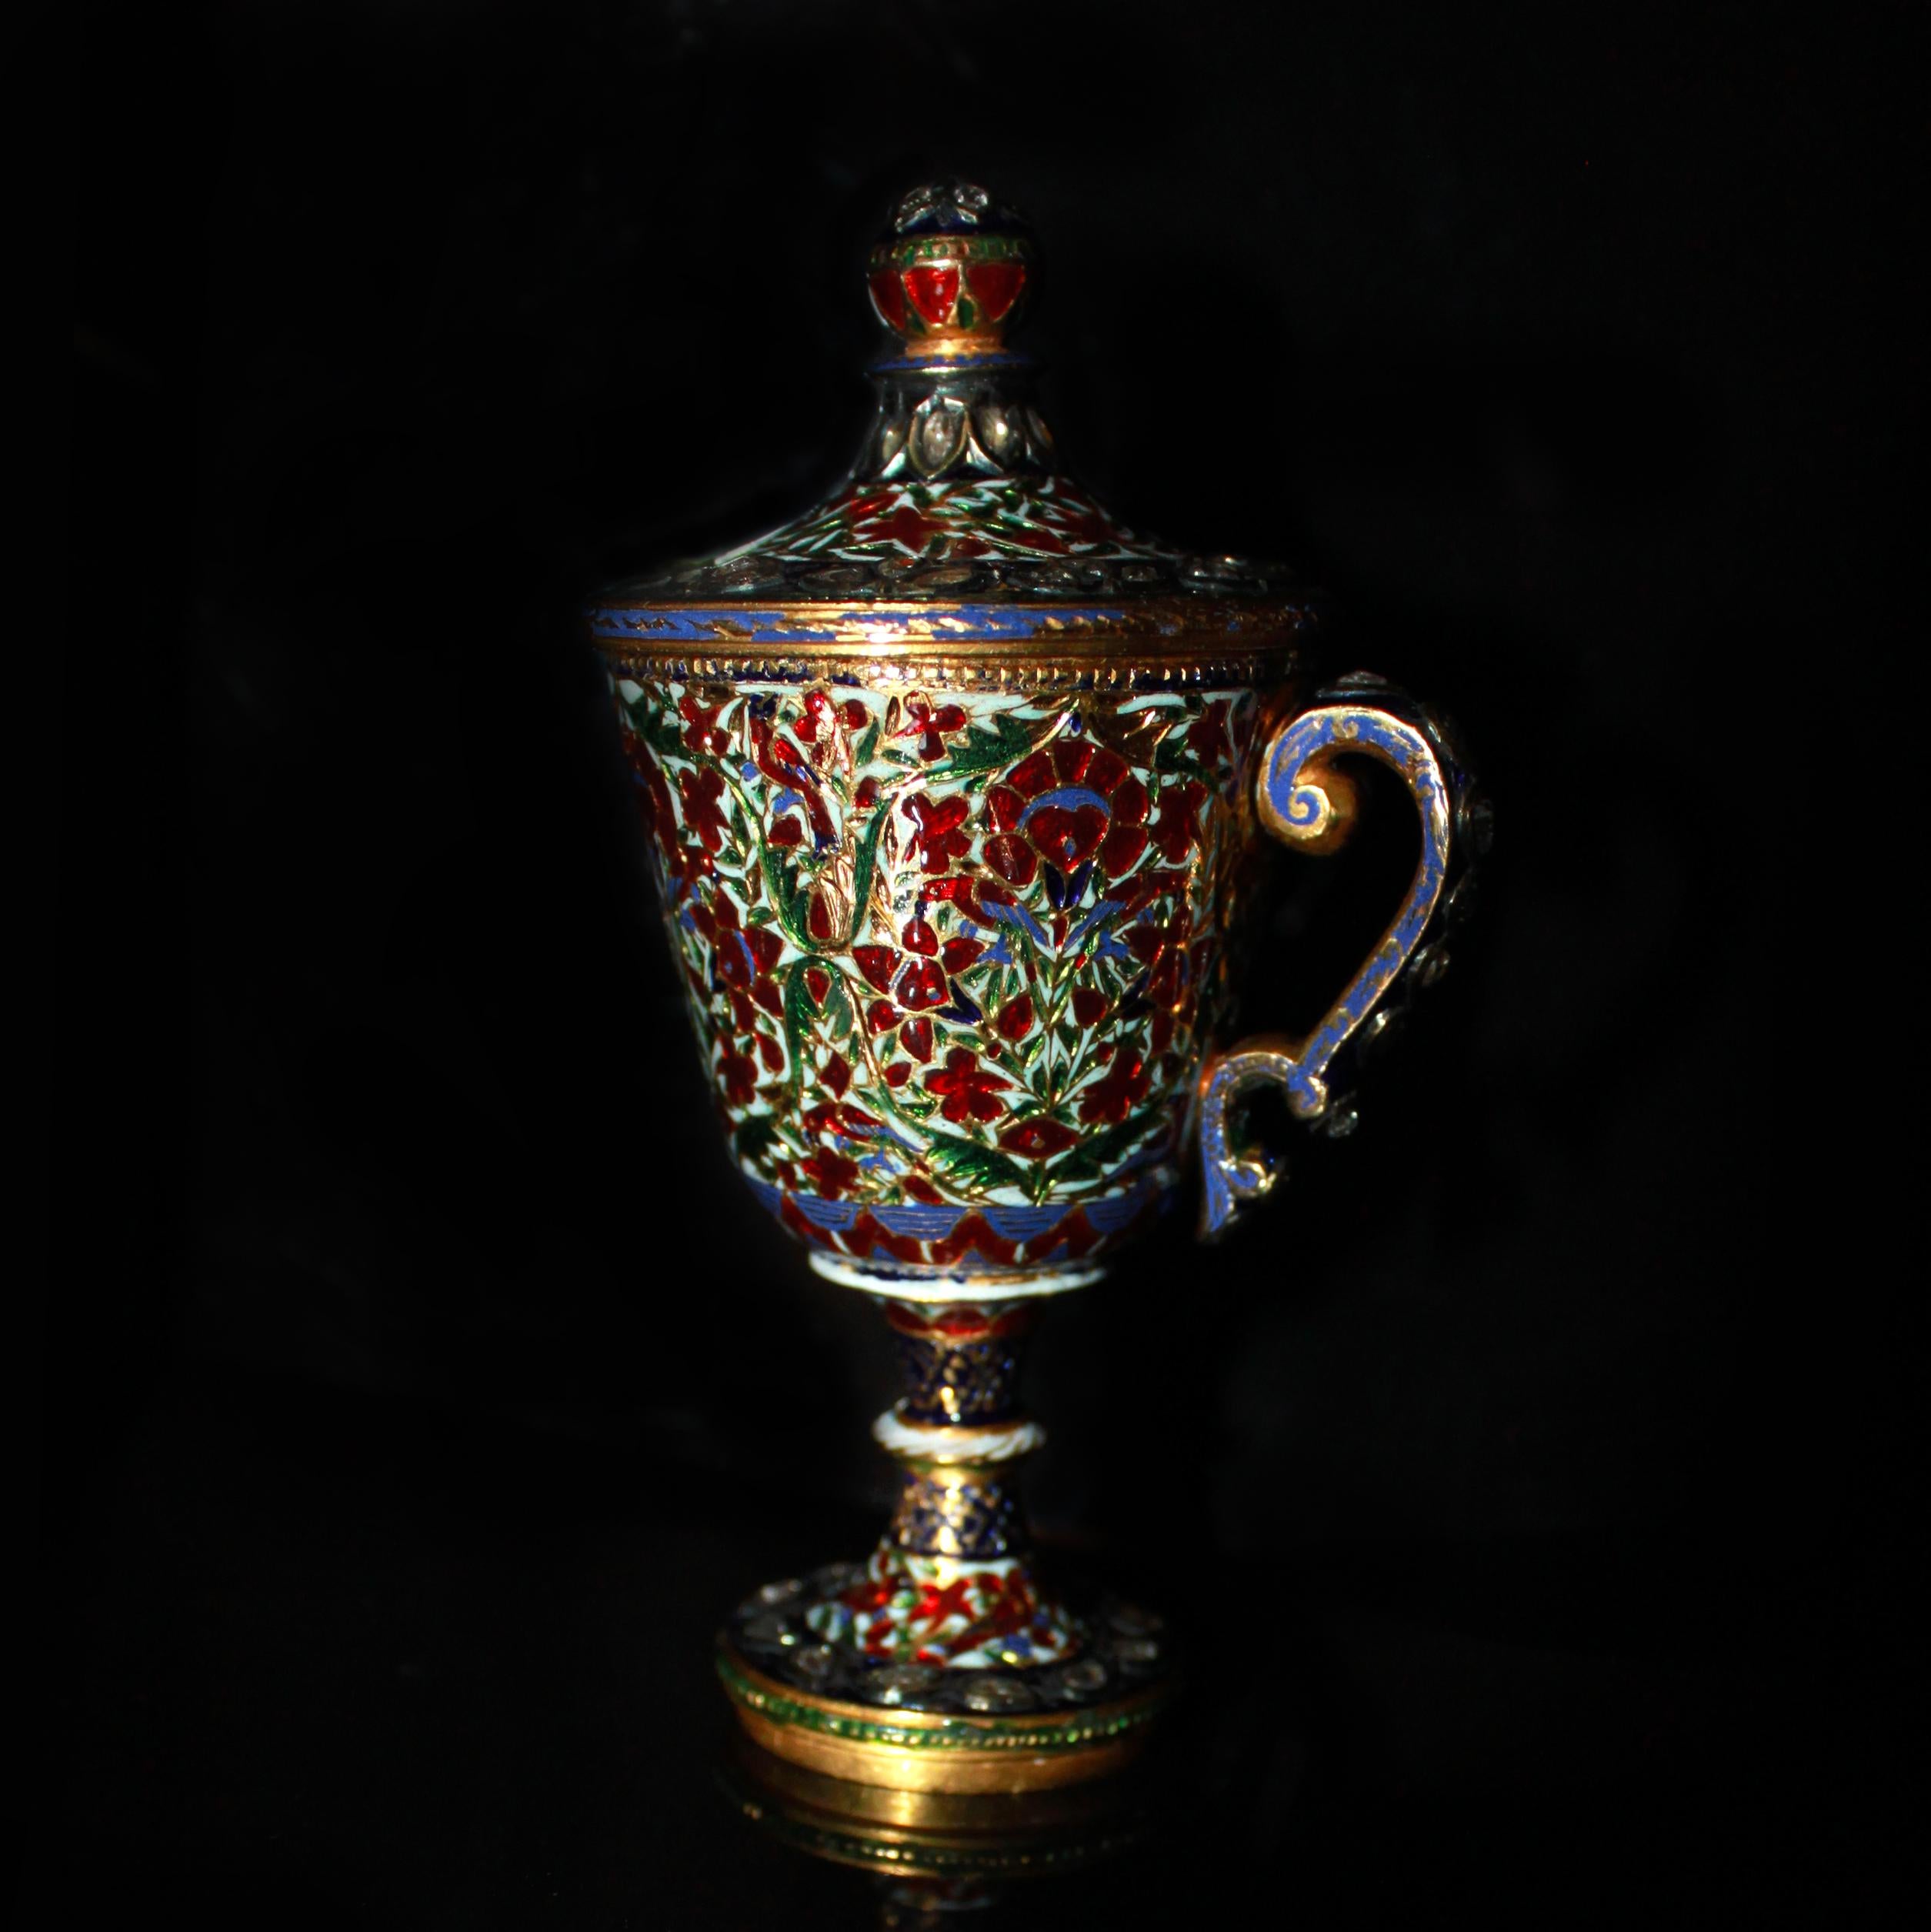 Seltener Mughal-Emaille- und Diamantbecher, frühes 19. Jahrhundert

Die Mughal-Tasse ist fein verziert mit einer Kombination aus roter, weißer, blauer und grüner 